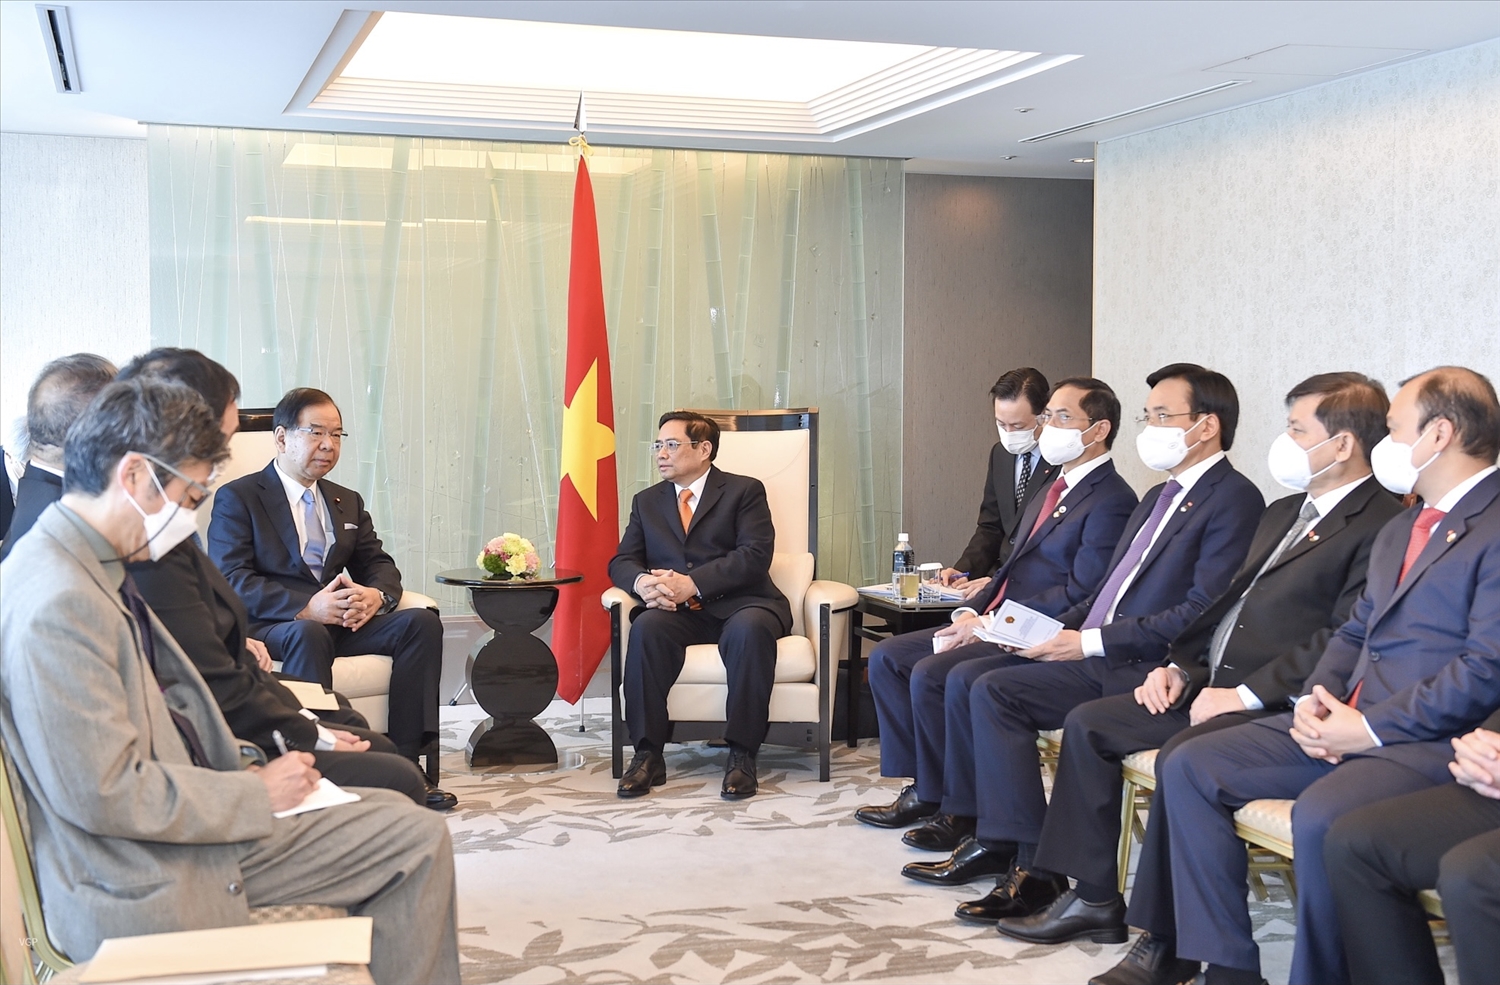 Thủ tướng Chính phủ Phạm Minh Chính bày tỏ hài lòng quan hệ Đối tác chiến lược sâu rộng Việt Nam - Nhật Bản đang phát triển tốt đẹp, thực chất trên nhiều lĩnh vực với sự tin cậy chính trị cao. Ảnh: VGP/Nhật Bắc